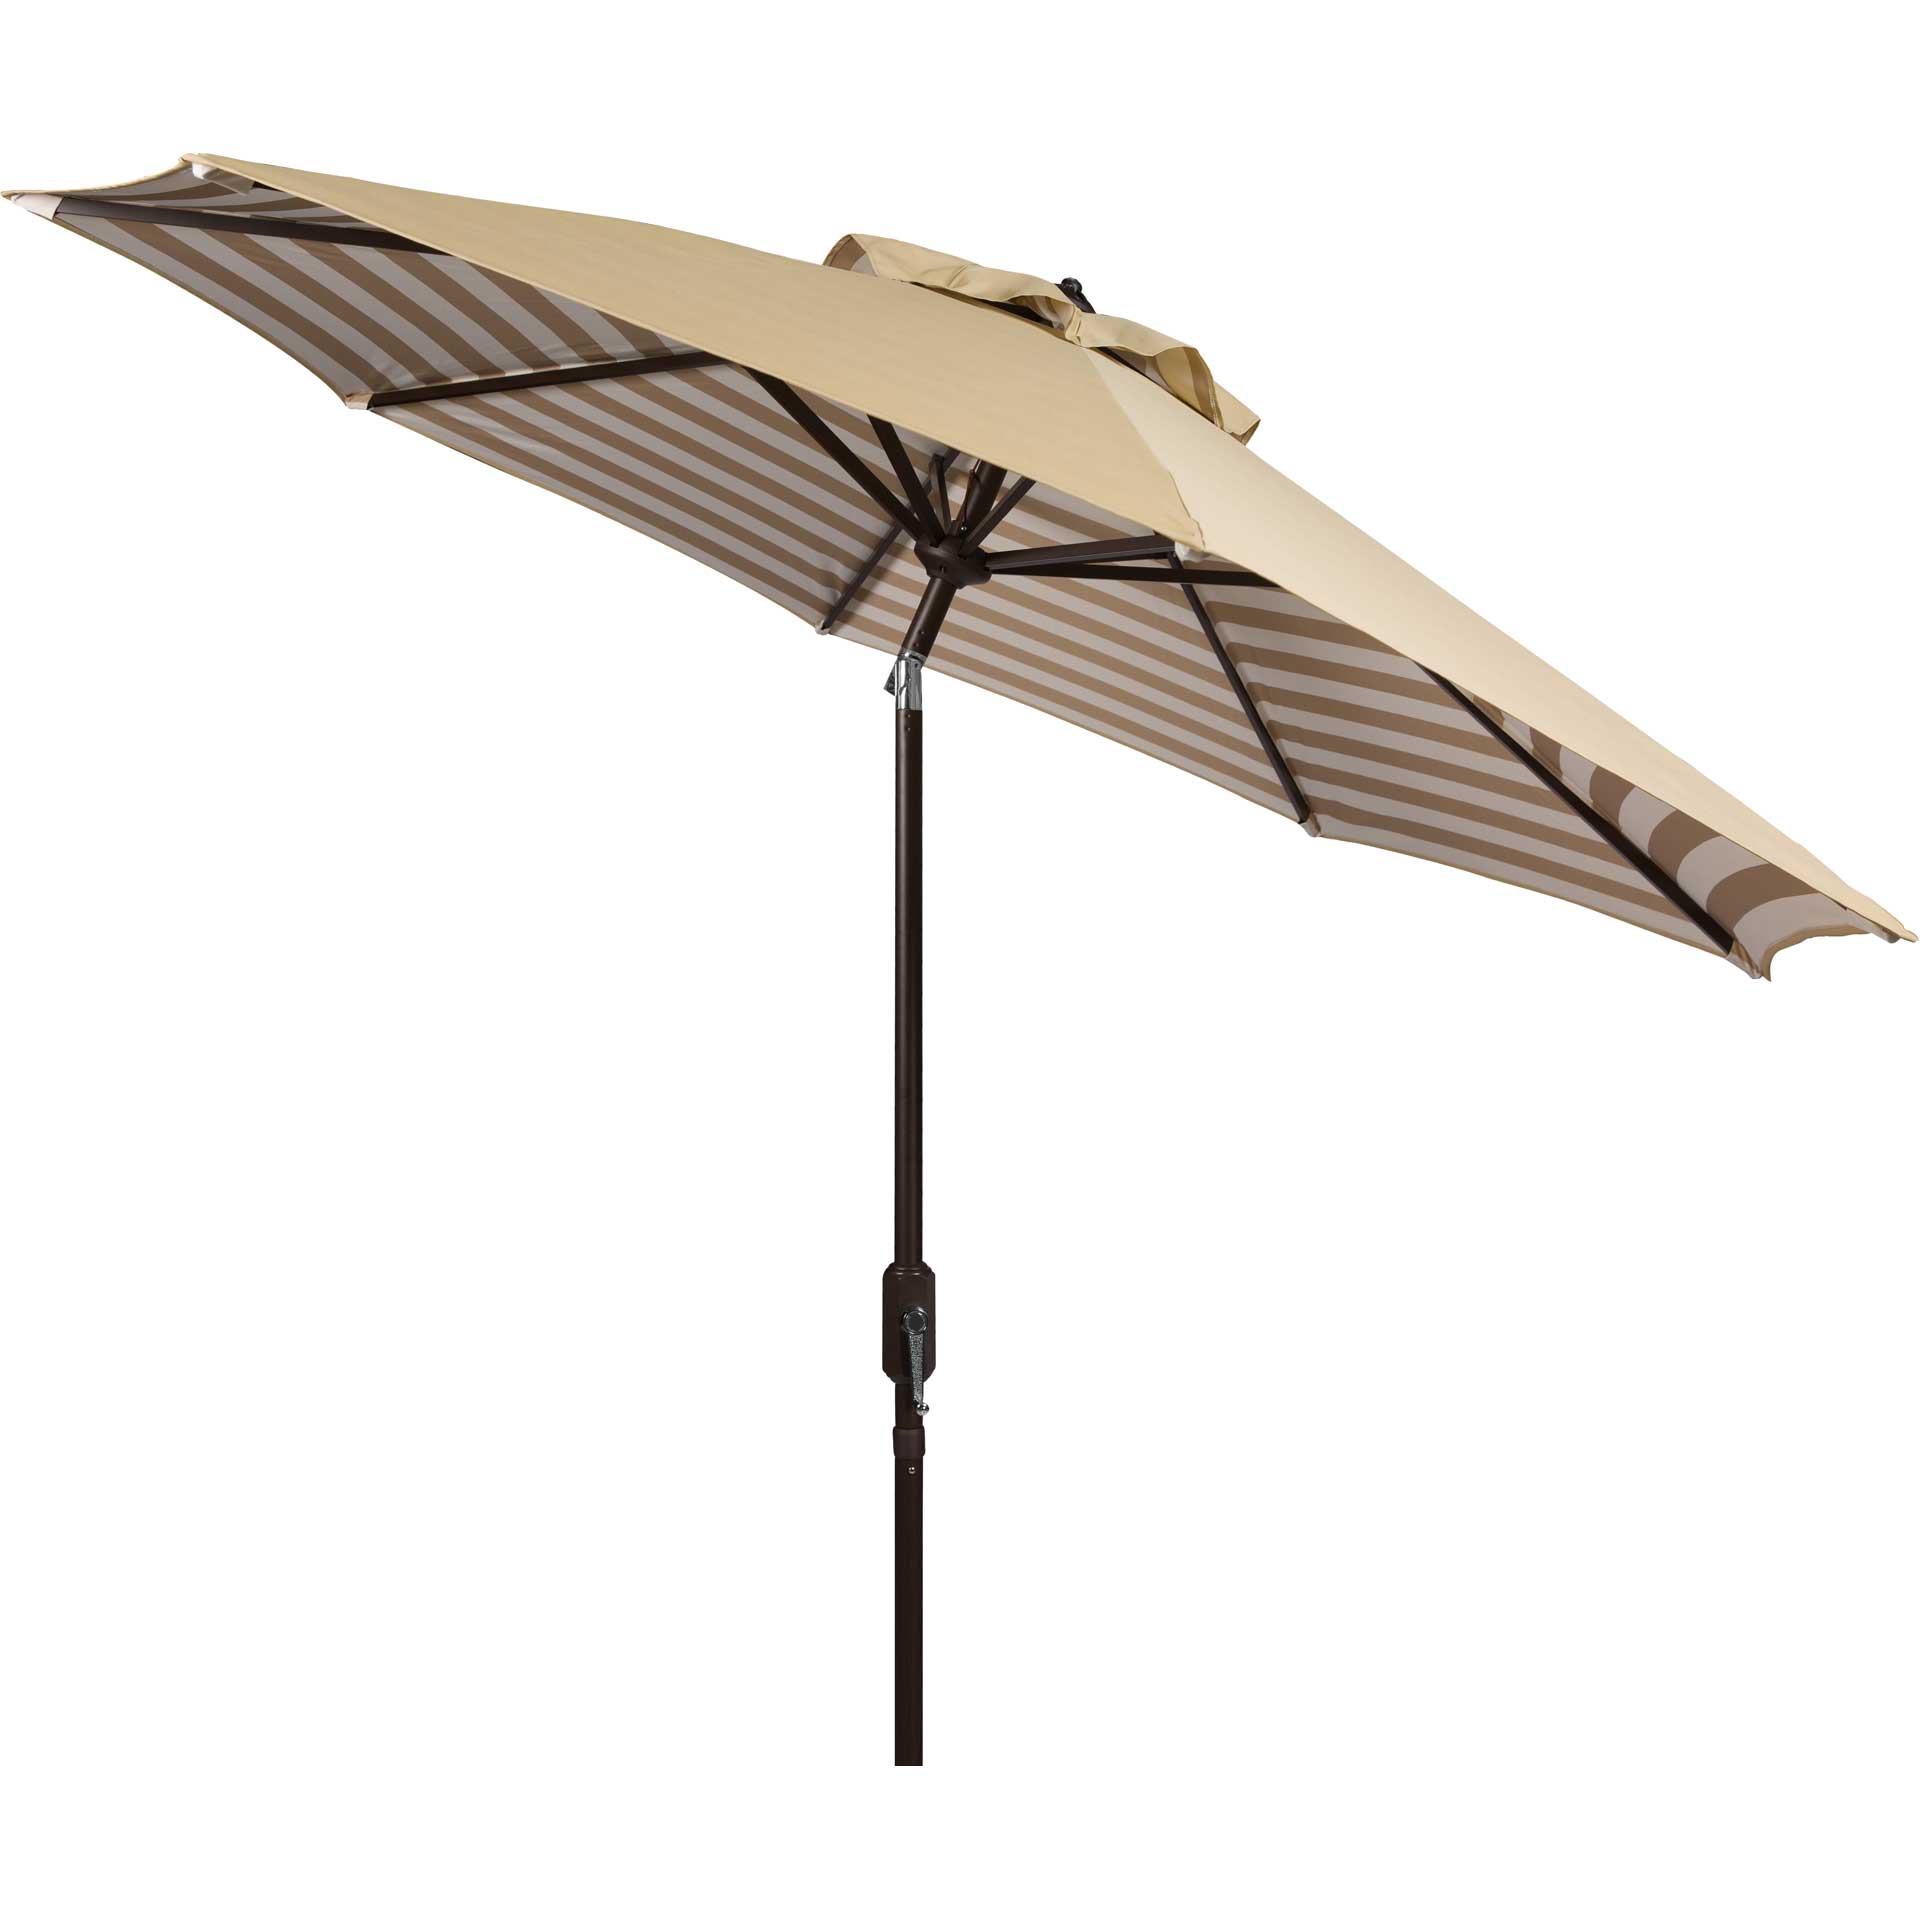 Atara Striped Outdoor Auto Tilt Umbrella Beige/White